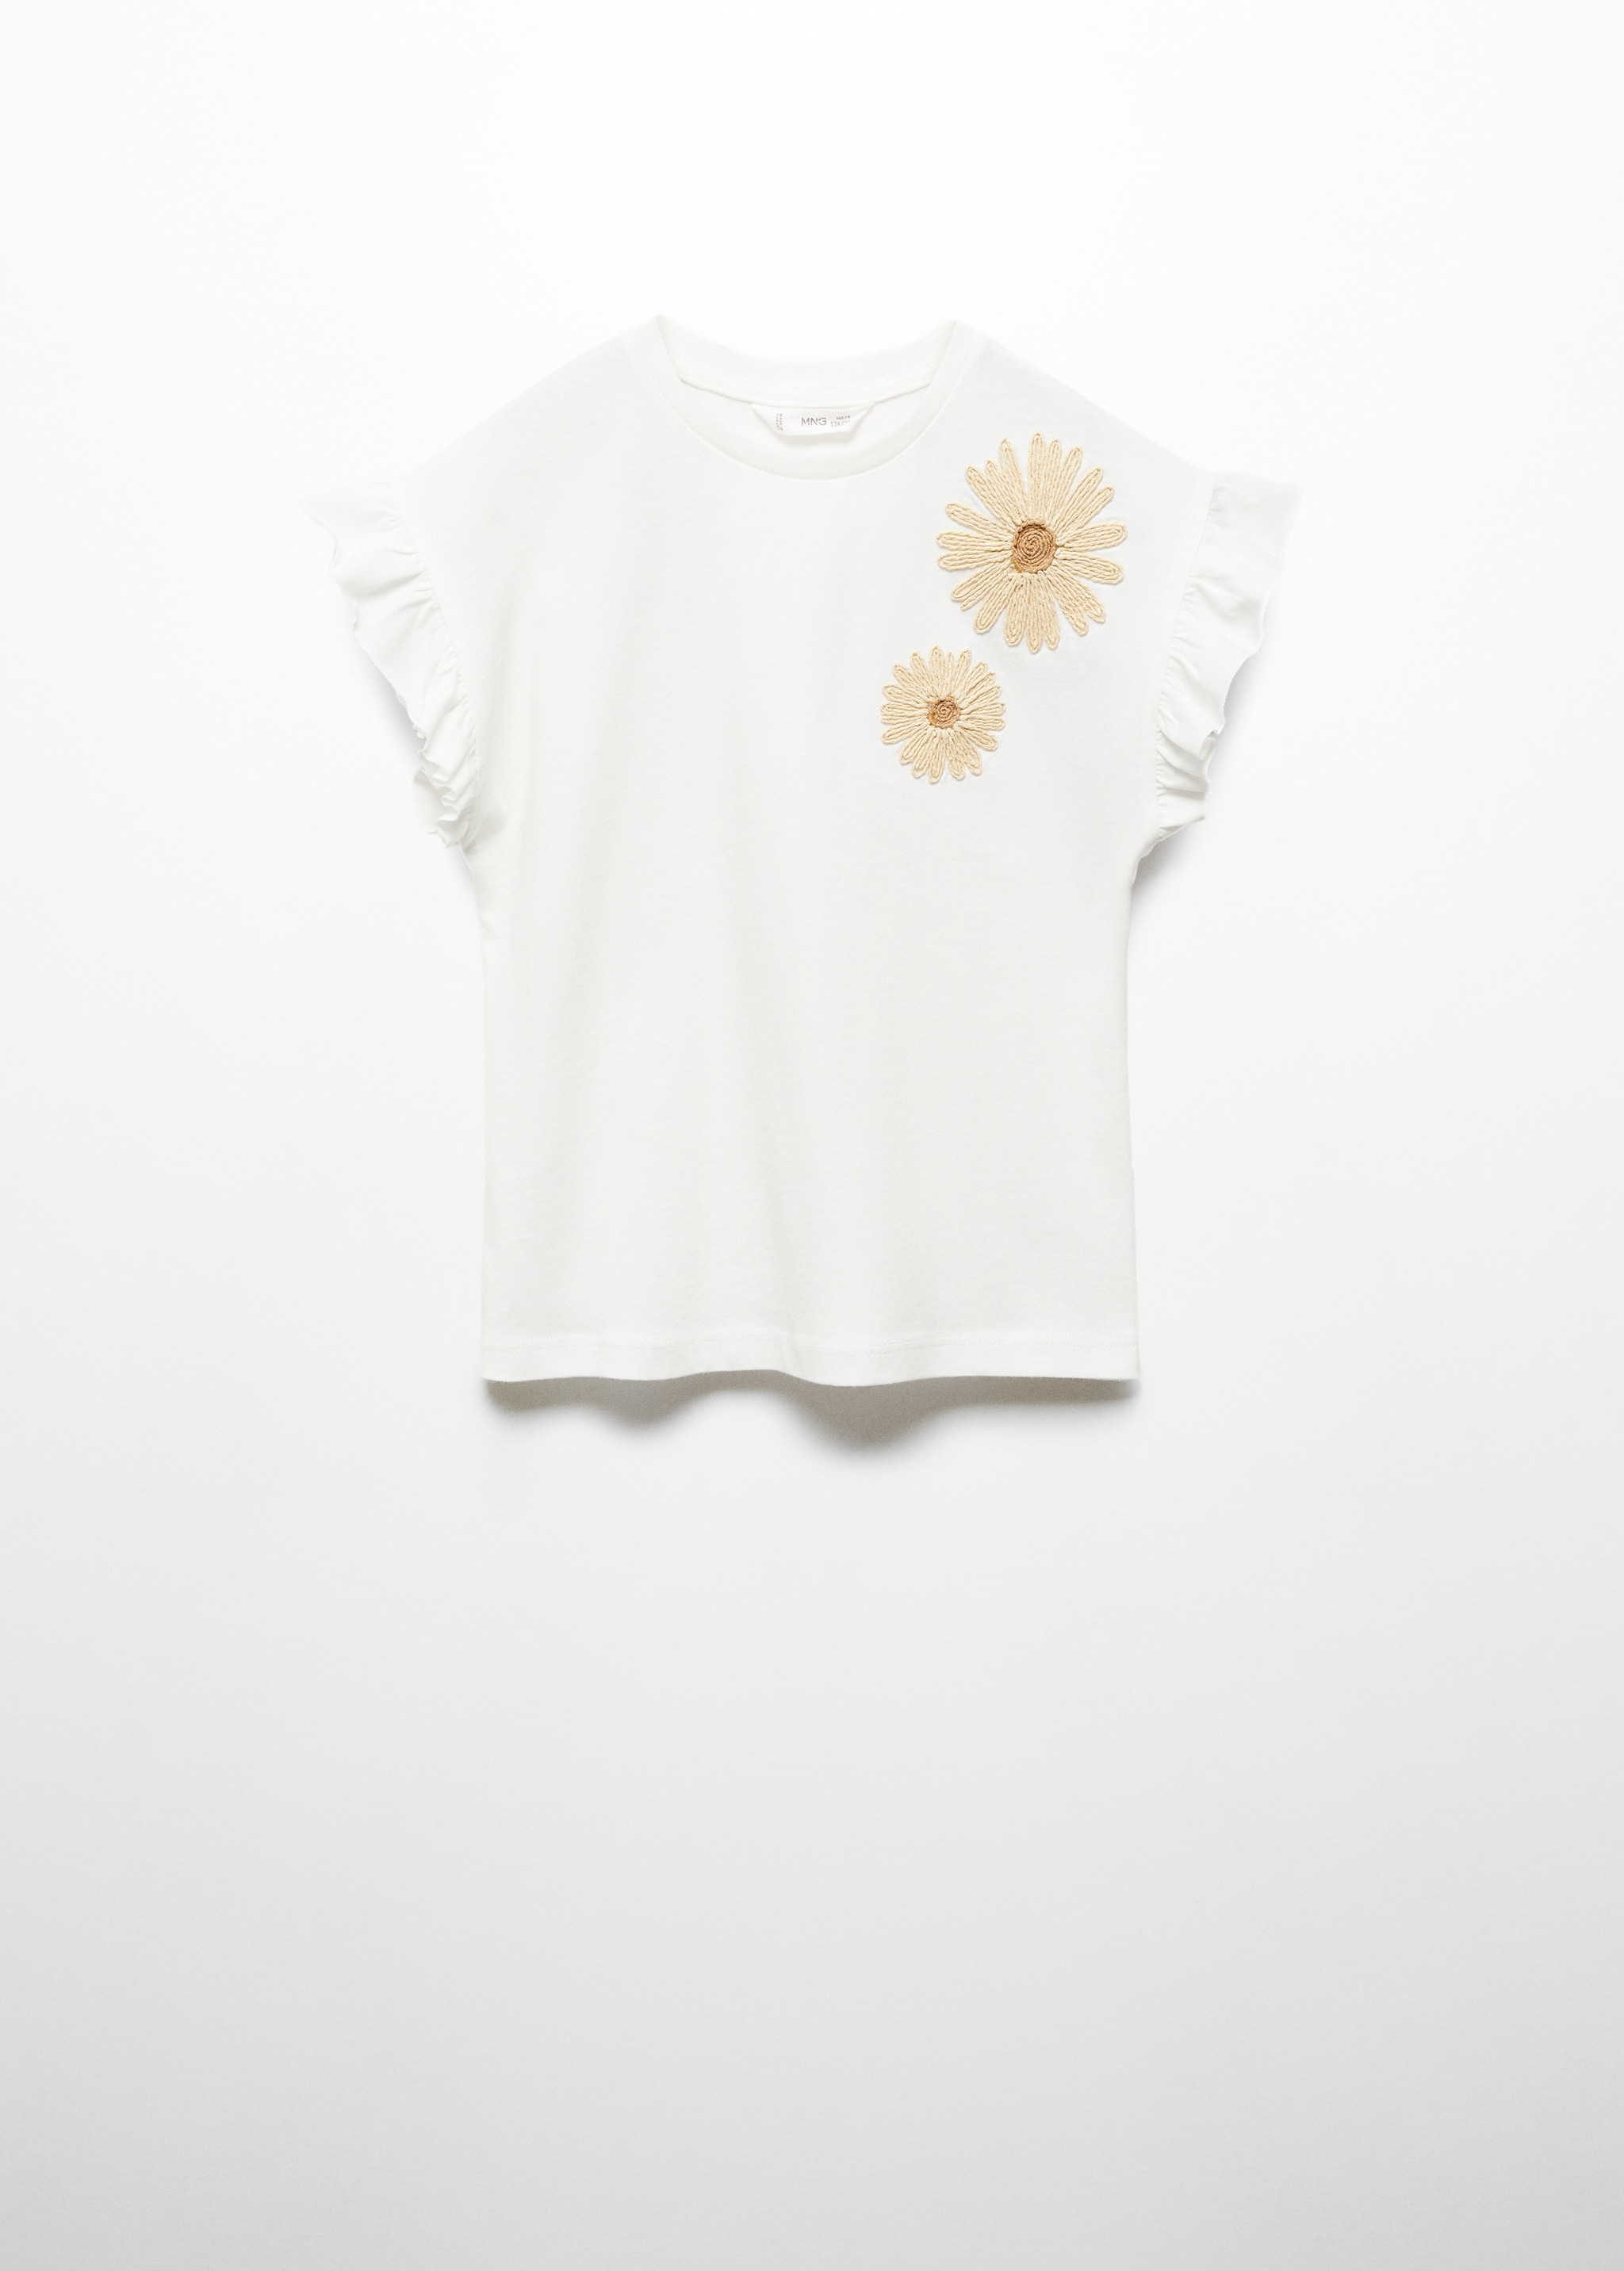 Camiseta flores relieve - Artículo sin modelo